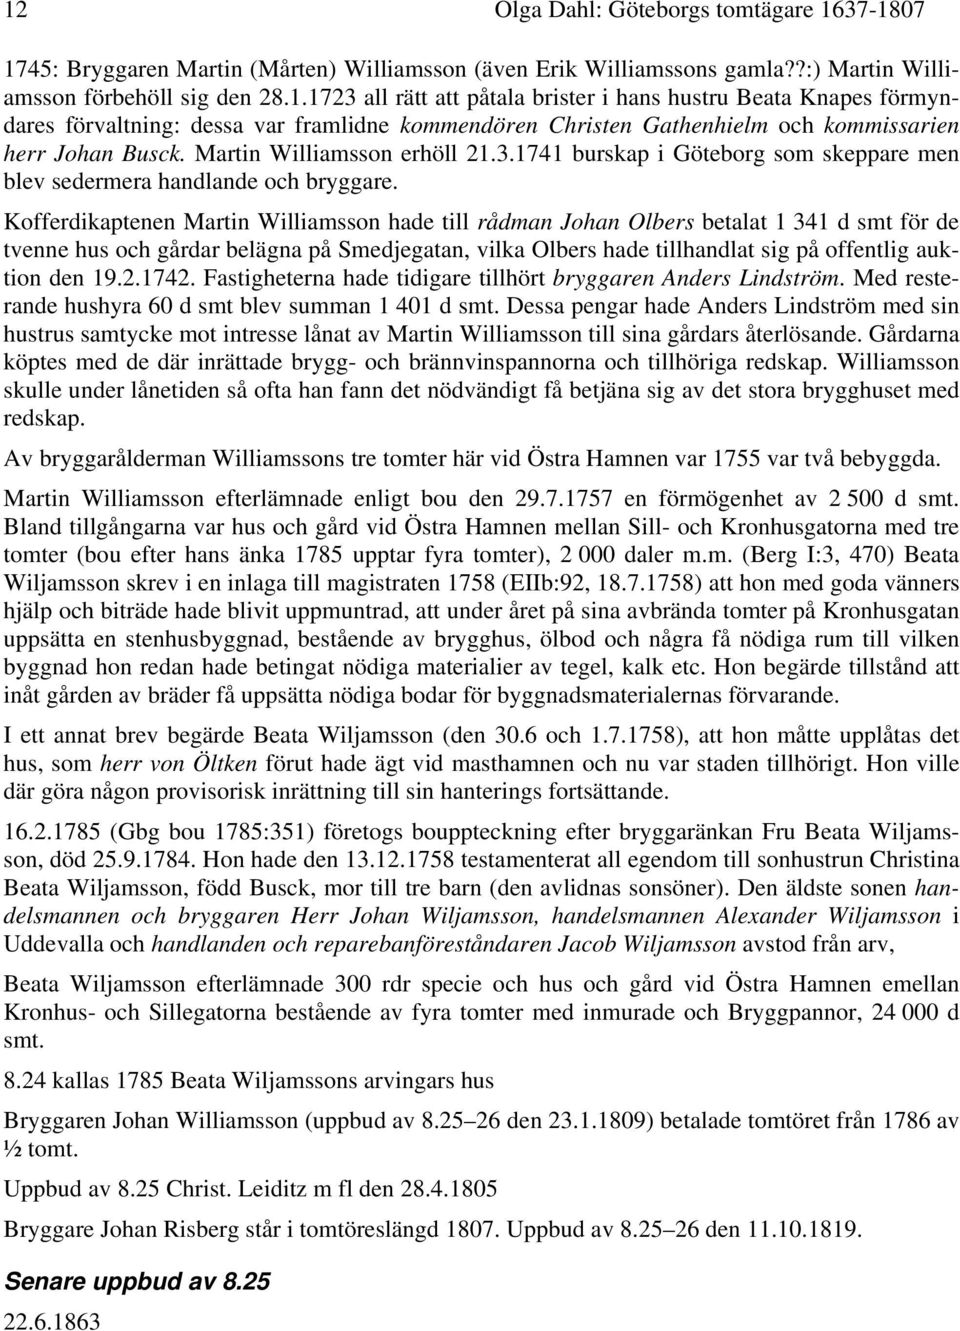 Kofferdikaptenen Martin Williamsson hade till rådman Johan Olbers betalat 1 341 d smt för de tvenne hus och gårdar belägna på Smedjegatan, vilka Olbers hade tillhandlat sig på offentlig auktion den